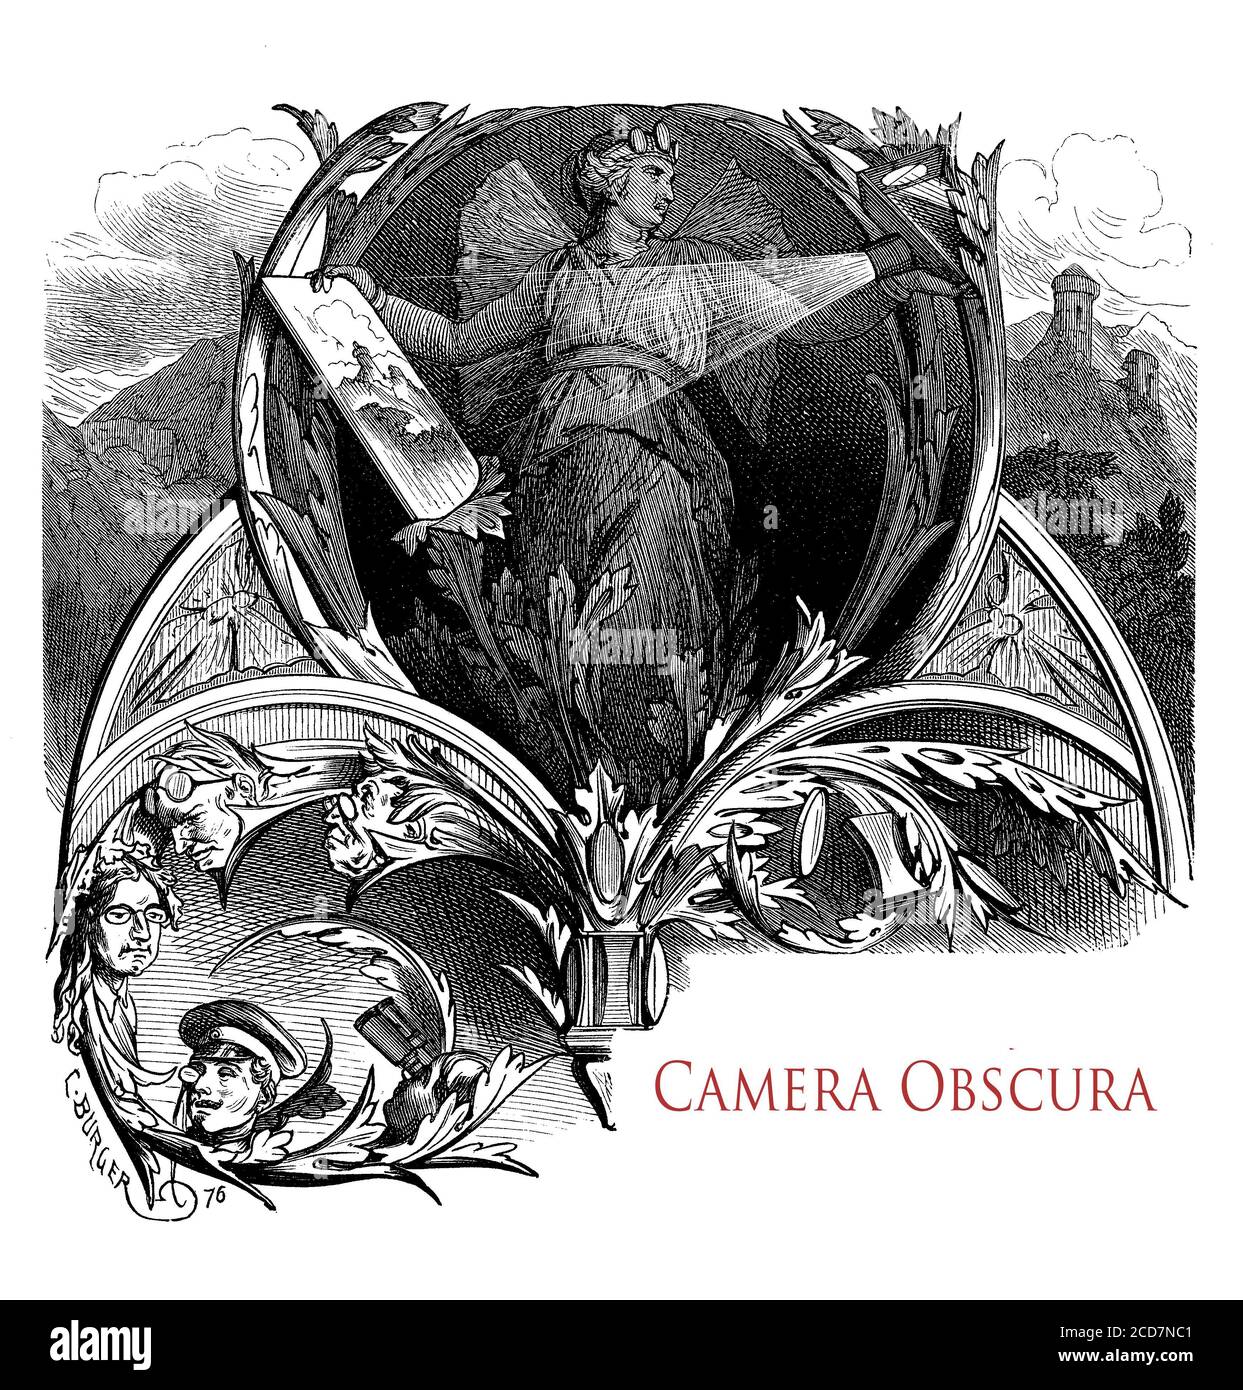 Schönes typografisches Frontkapitel-Bild eines Vintage-Buches über Camera Obscura, dunklen Raum und optisches Phänomen Stockfoto